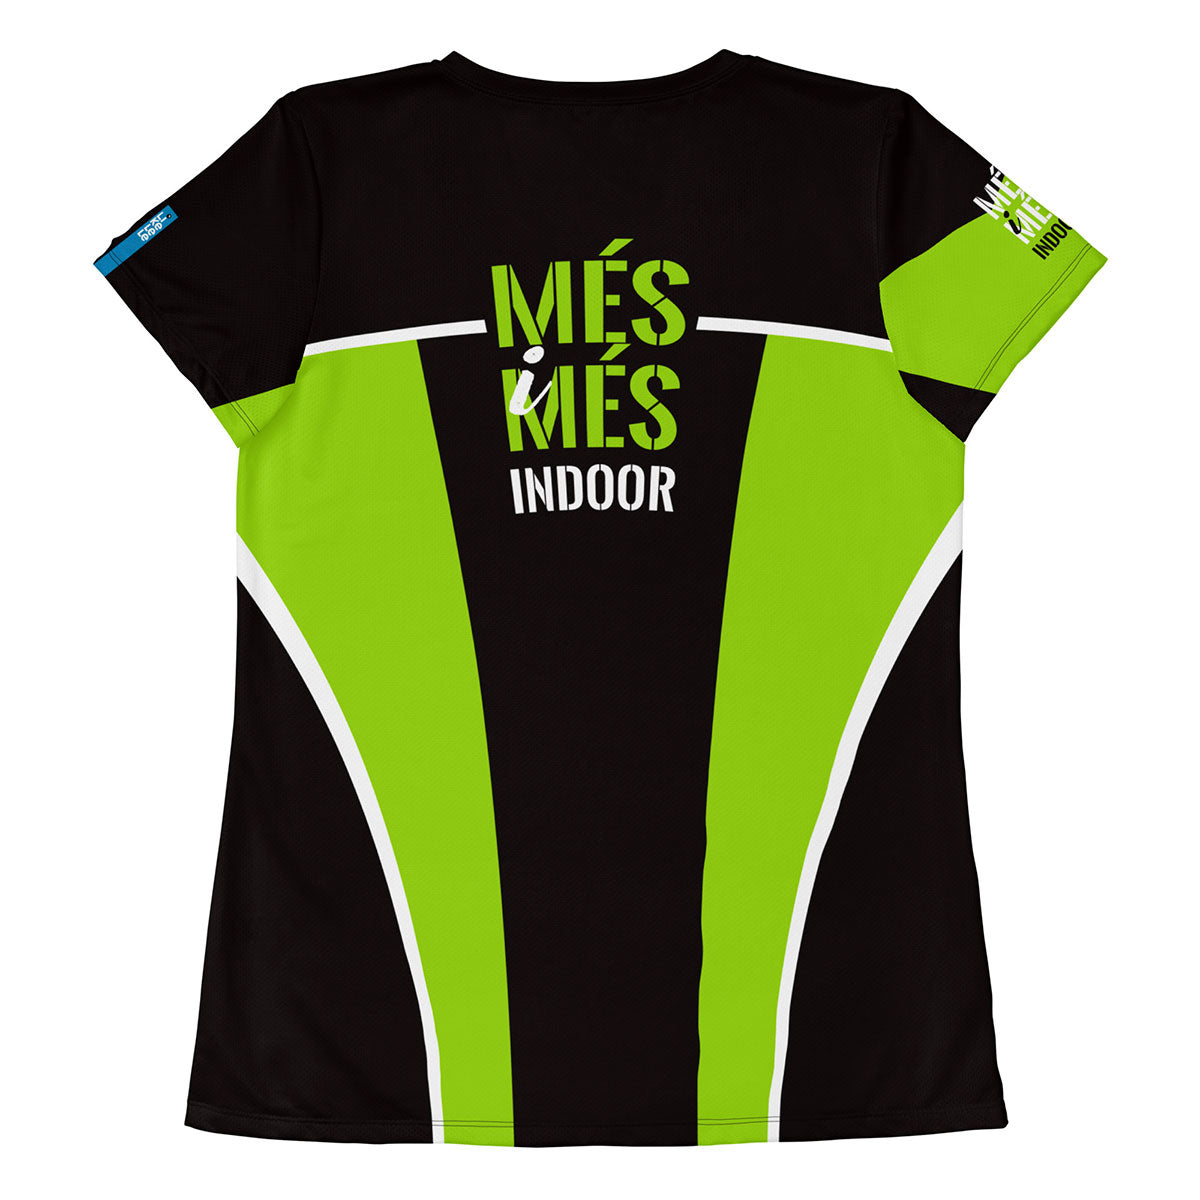 MÉS i MÉS INDOOR · Camiseta deportiva m/corta·Mujer · Premium·Full Print-256x2ipi